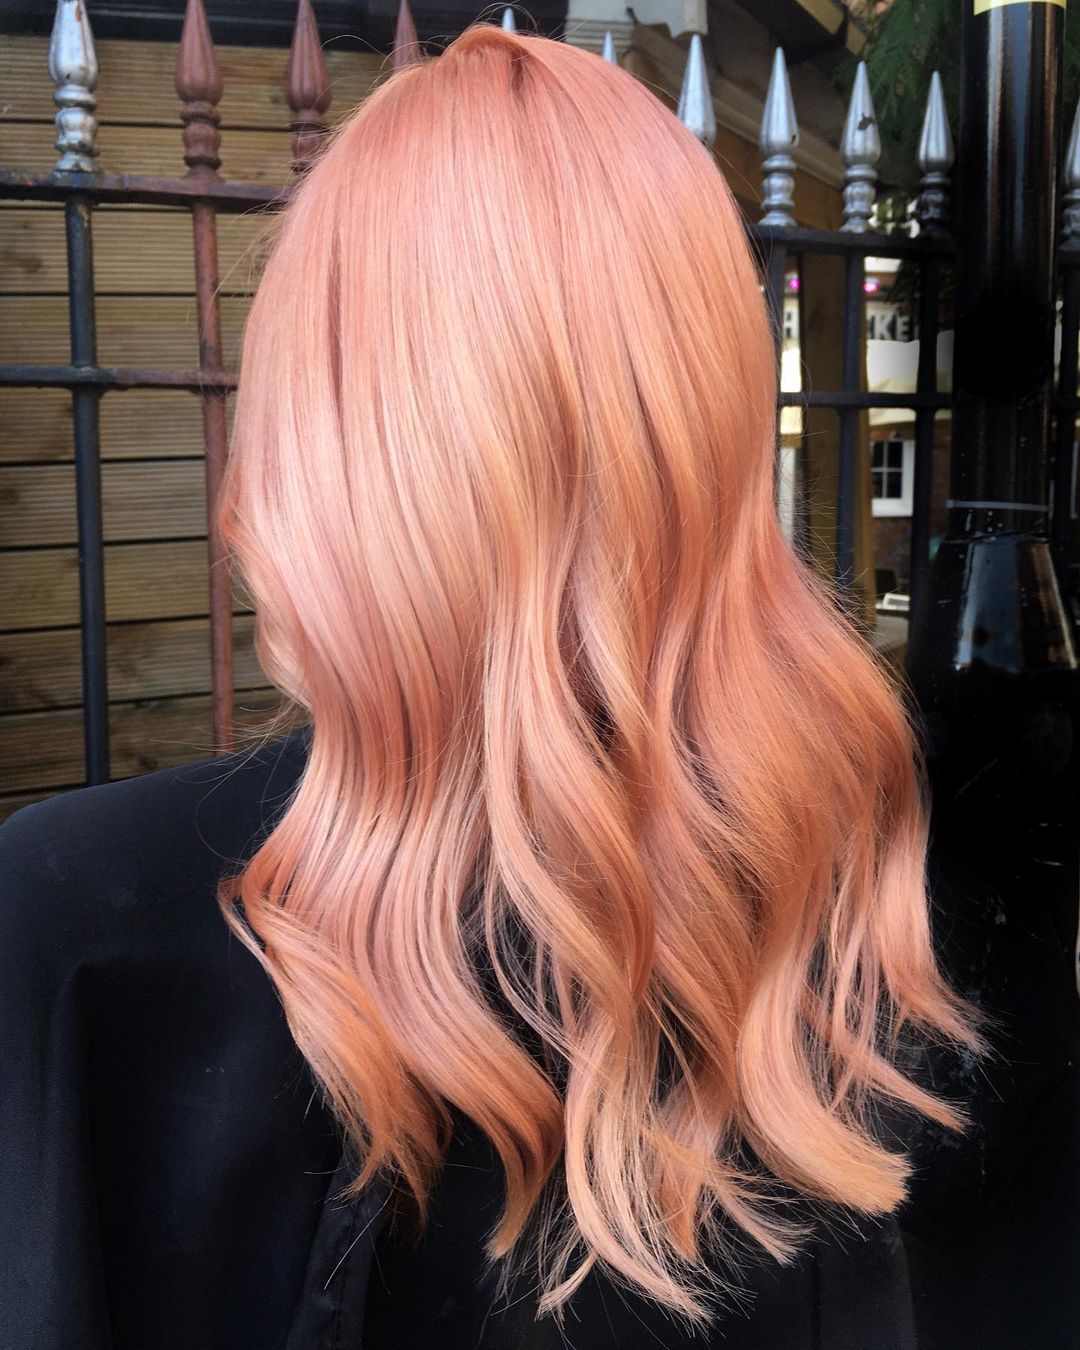 capelli rosa pesca pastello